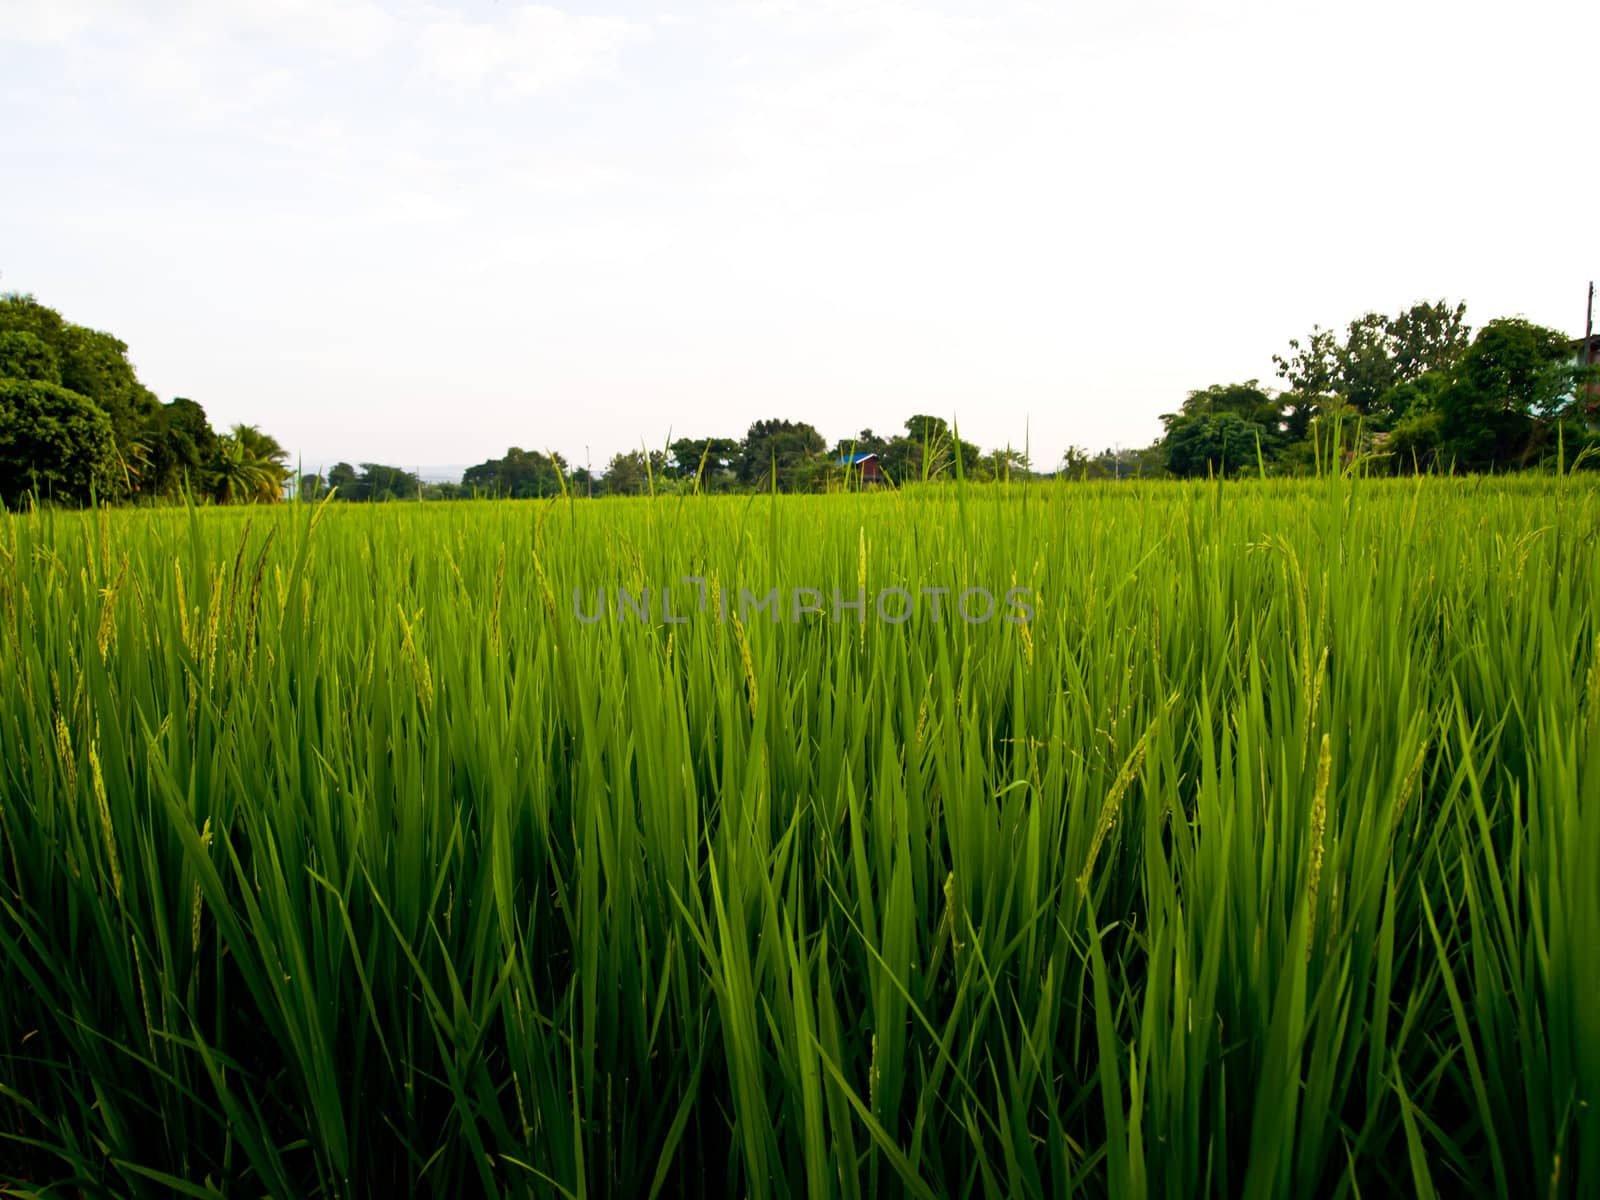 Green rice field3 by gjeerawut